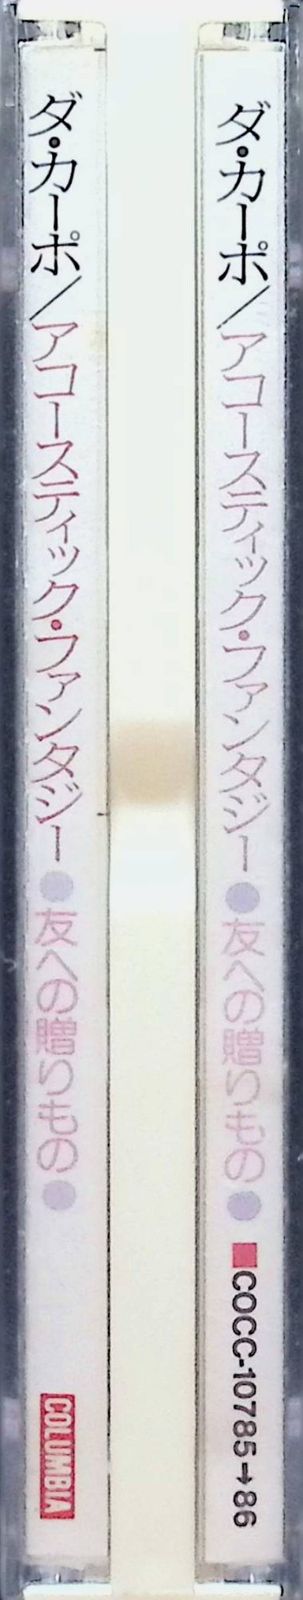 友への贈り物 アコースティック ファンタジー (2枚組) / ダ・カーポ (CD) - メルカリ